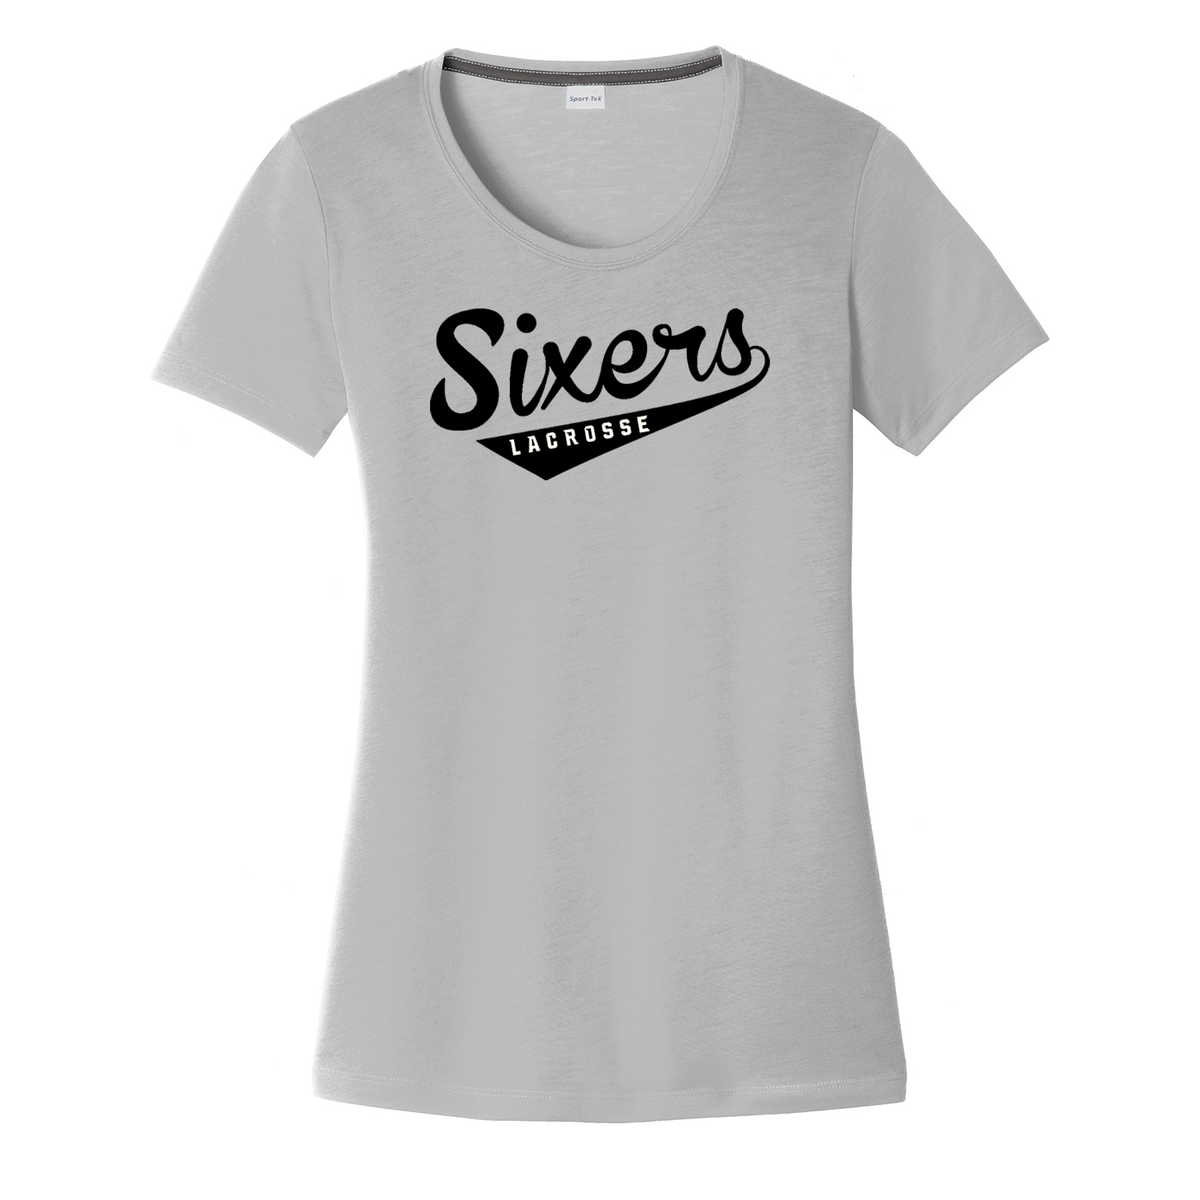 Sixers Lacrosse Women's CottonTouch Performance T-Shirt